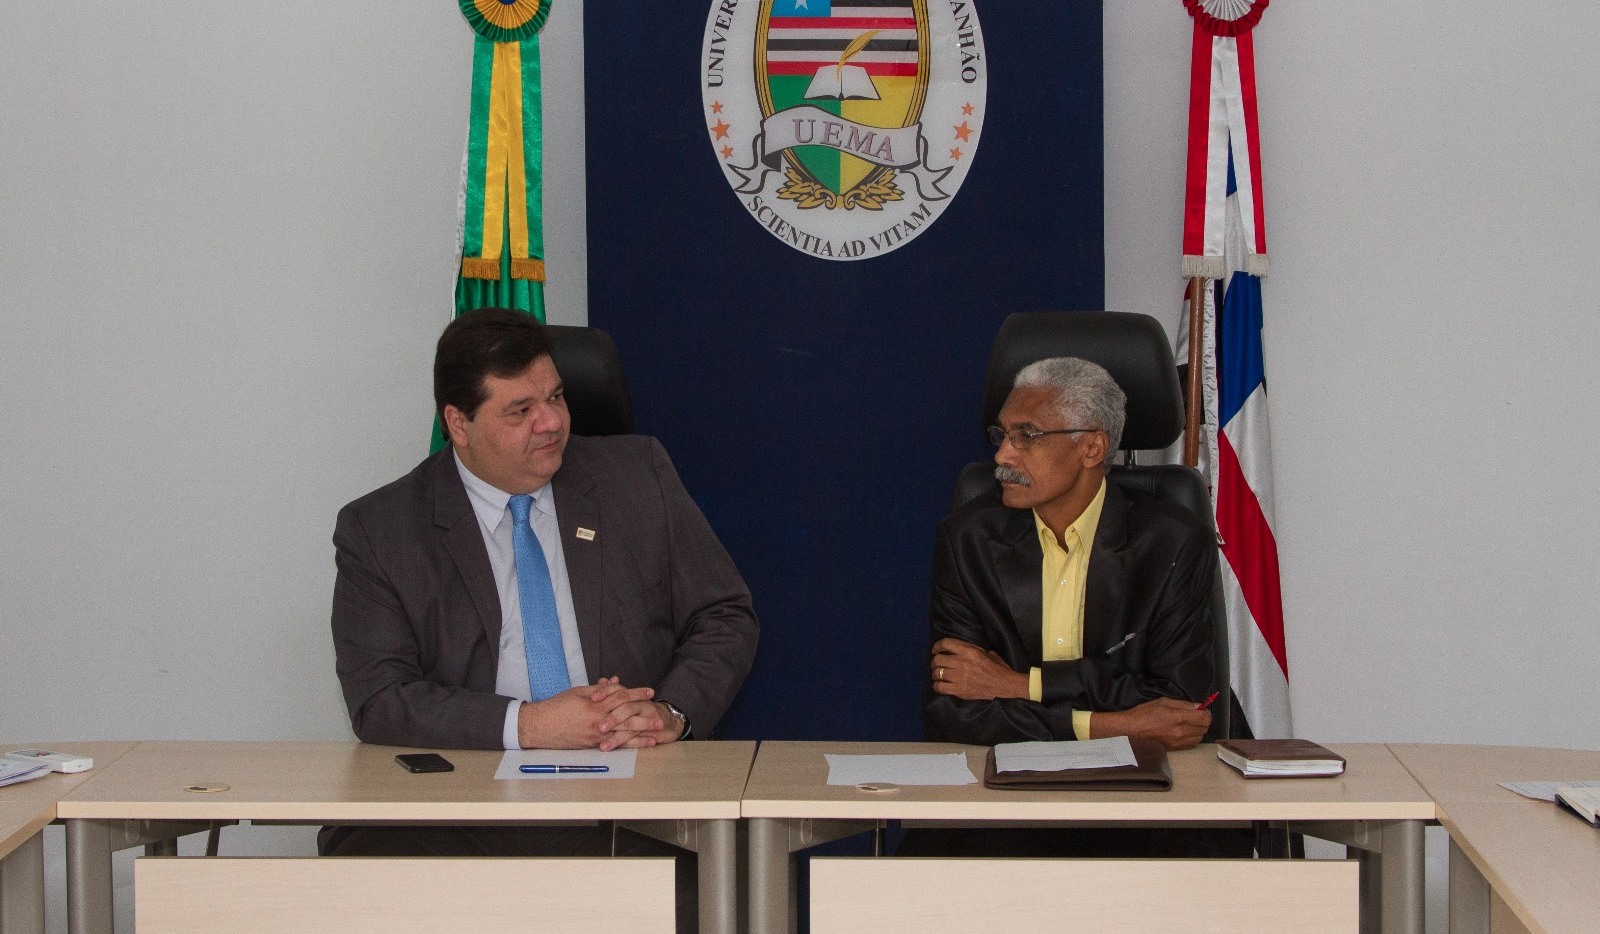 Reitor da UEMA reúne com prefeito de Paço do Lumiar